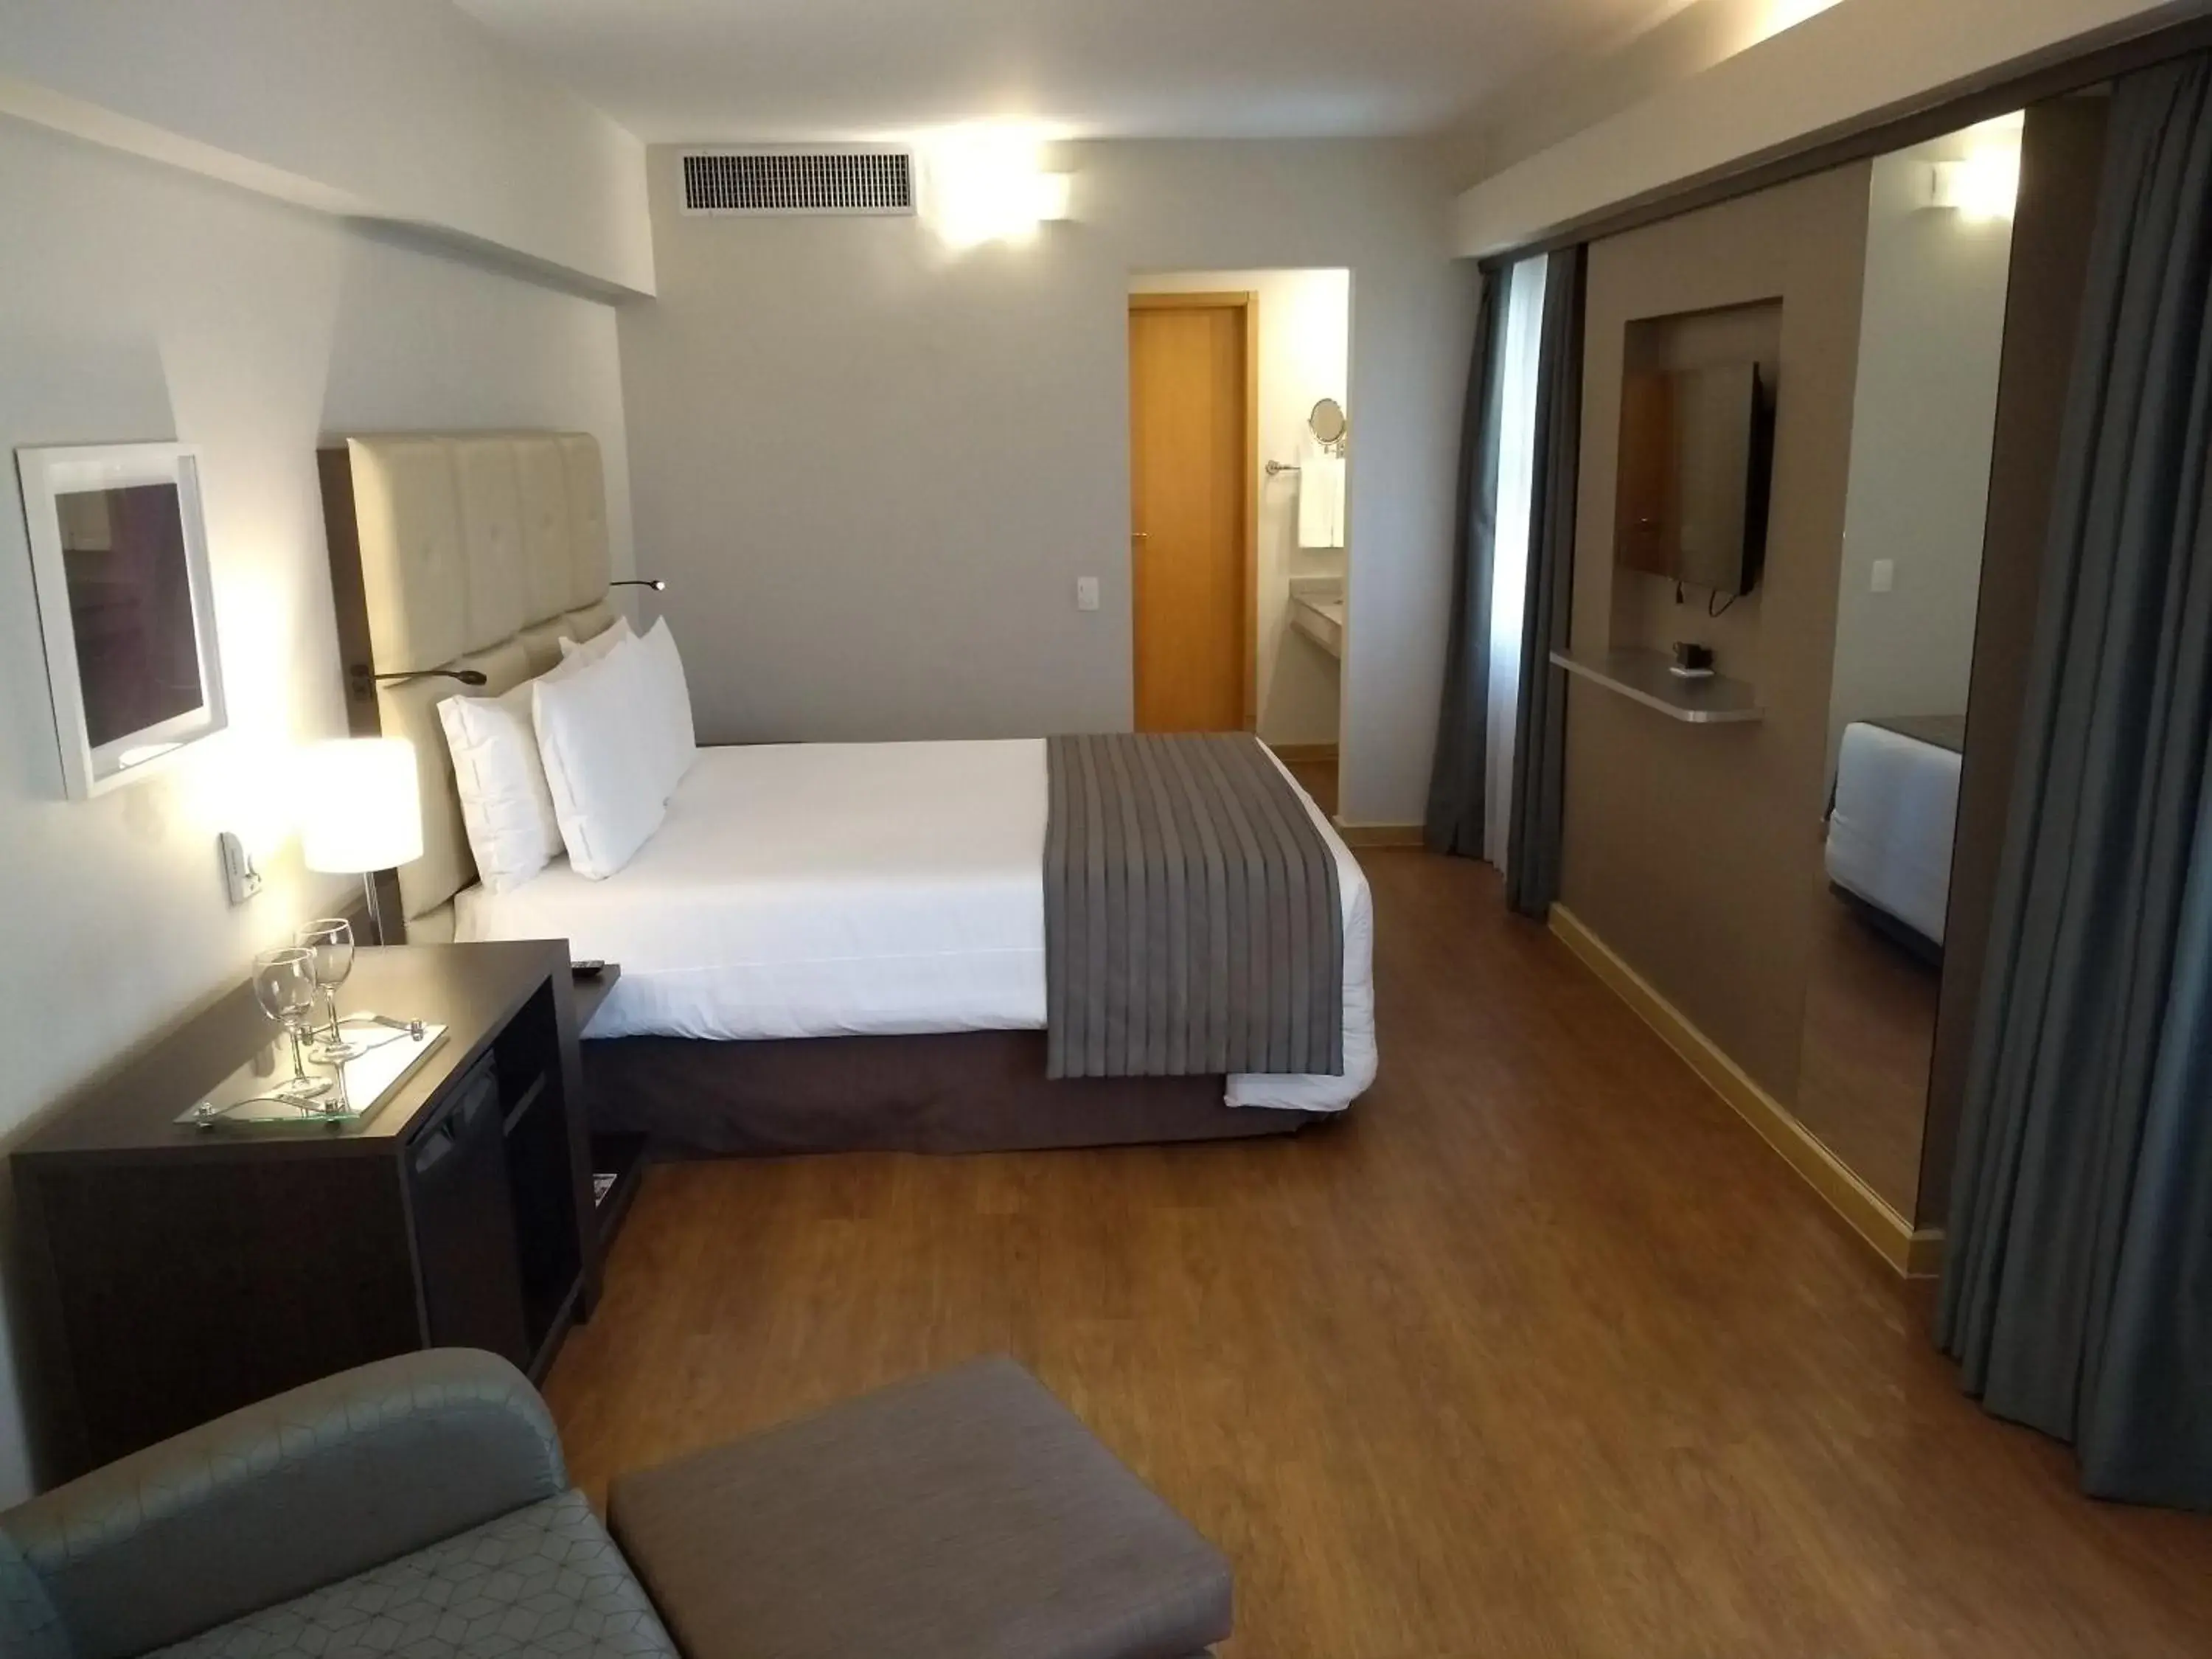 Bedroom in Sol Alphaville Hotel & Residence